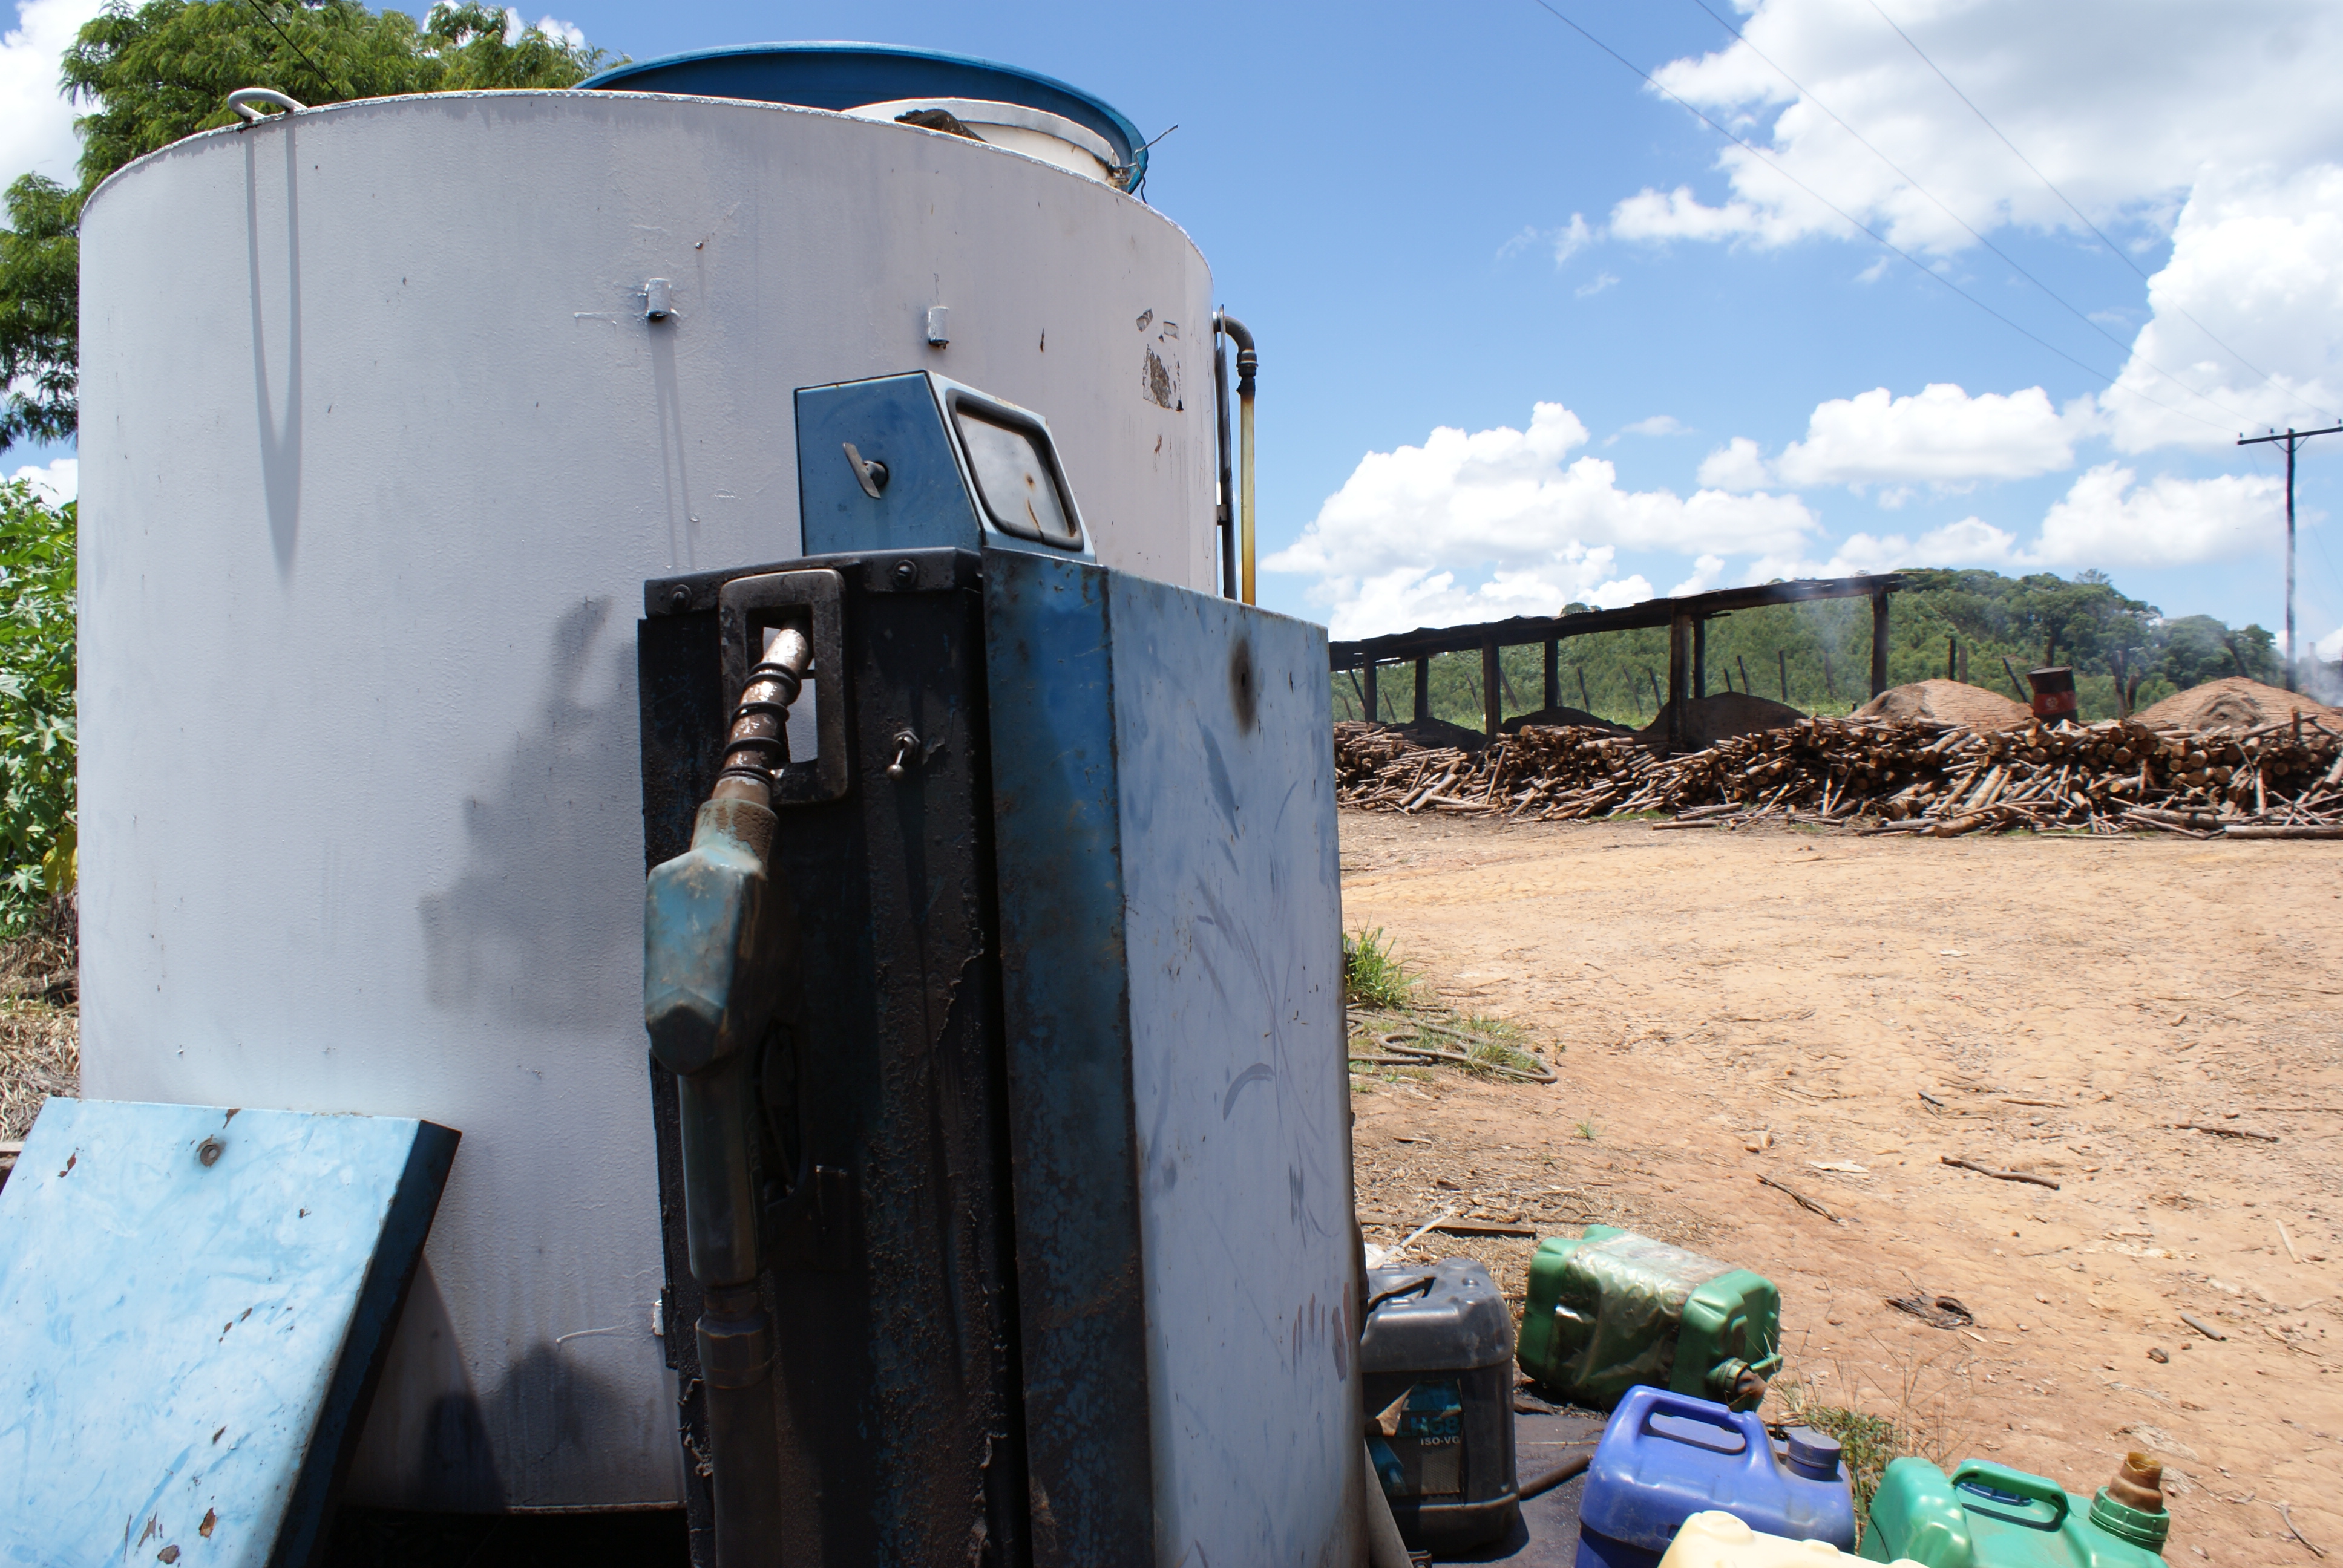 Tanque de óleo diesel ficava próximo a fornos de carvão onde trabalho escravo foi flagrado (Foto: Stefano Wrobleski)